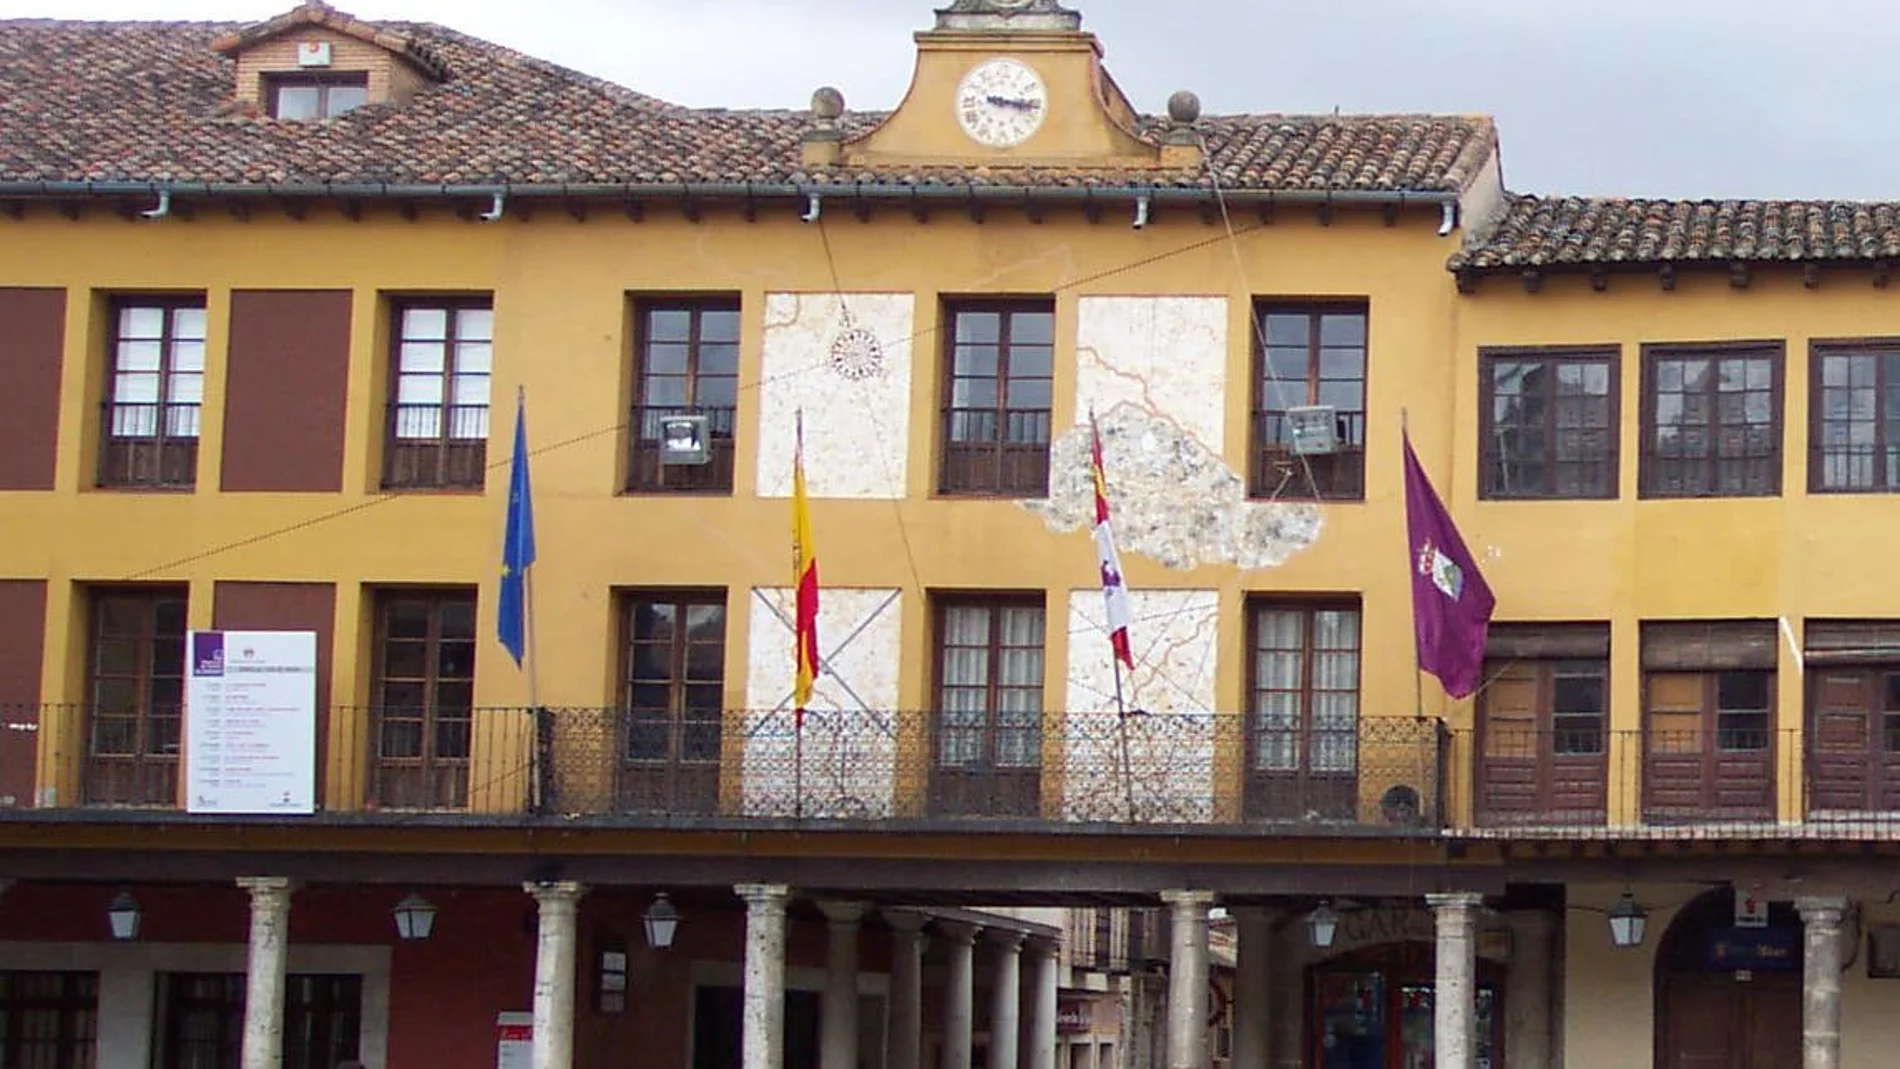 Ayuntamiento de Tordesillas